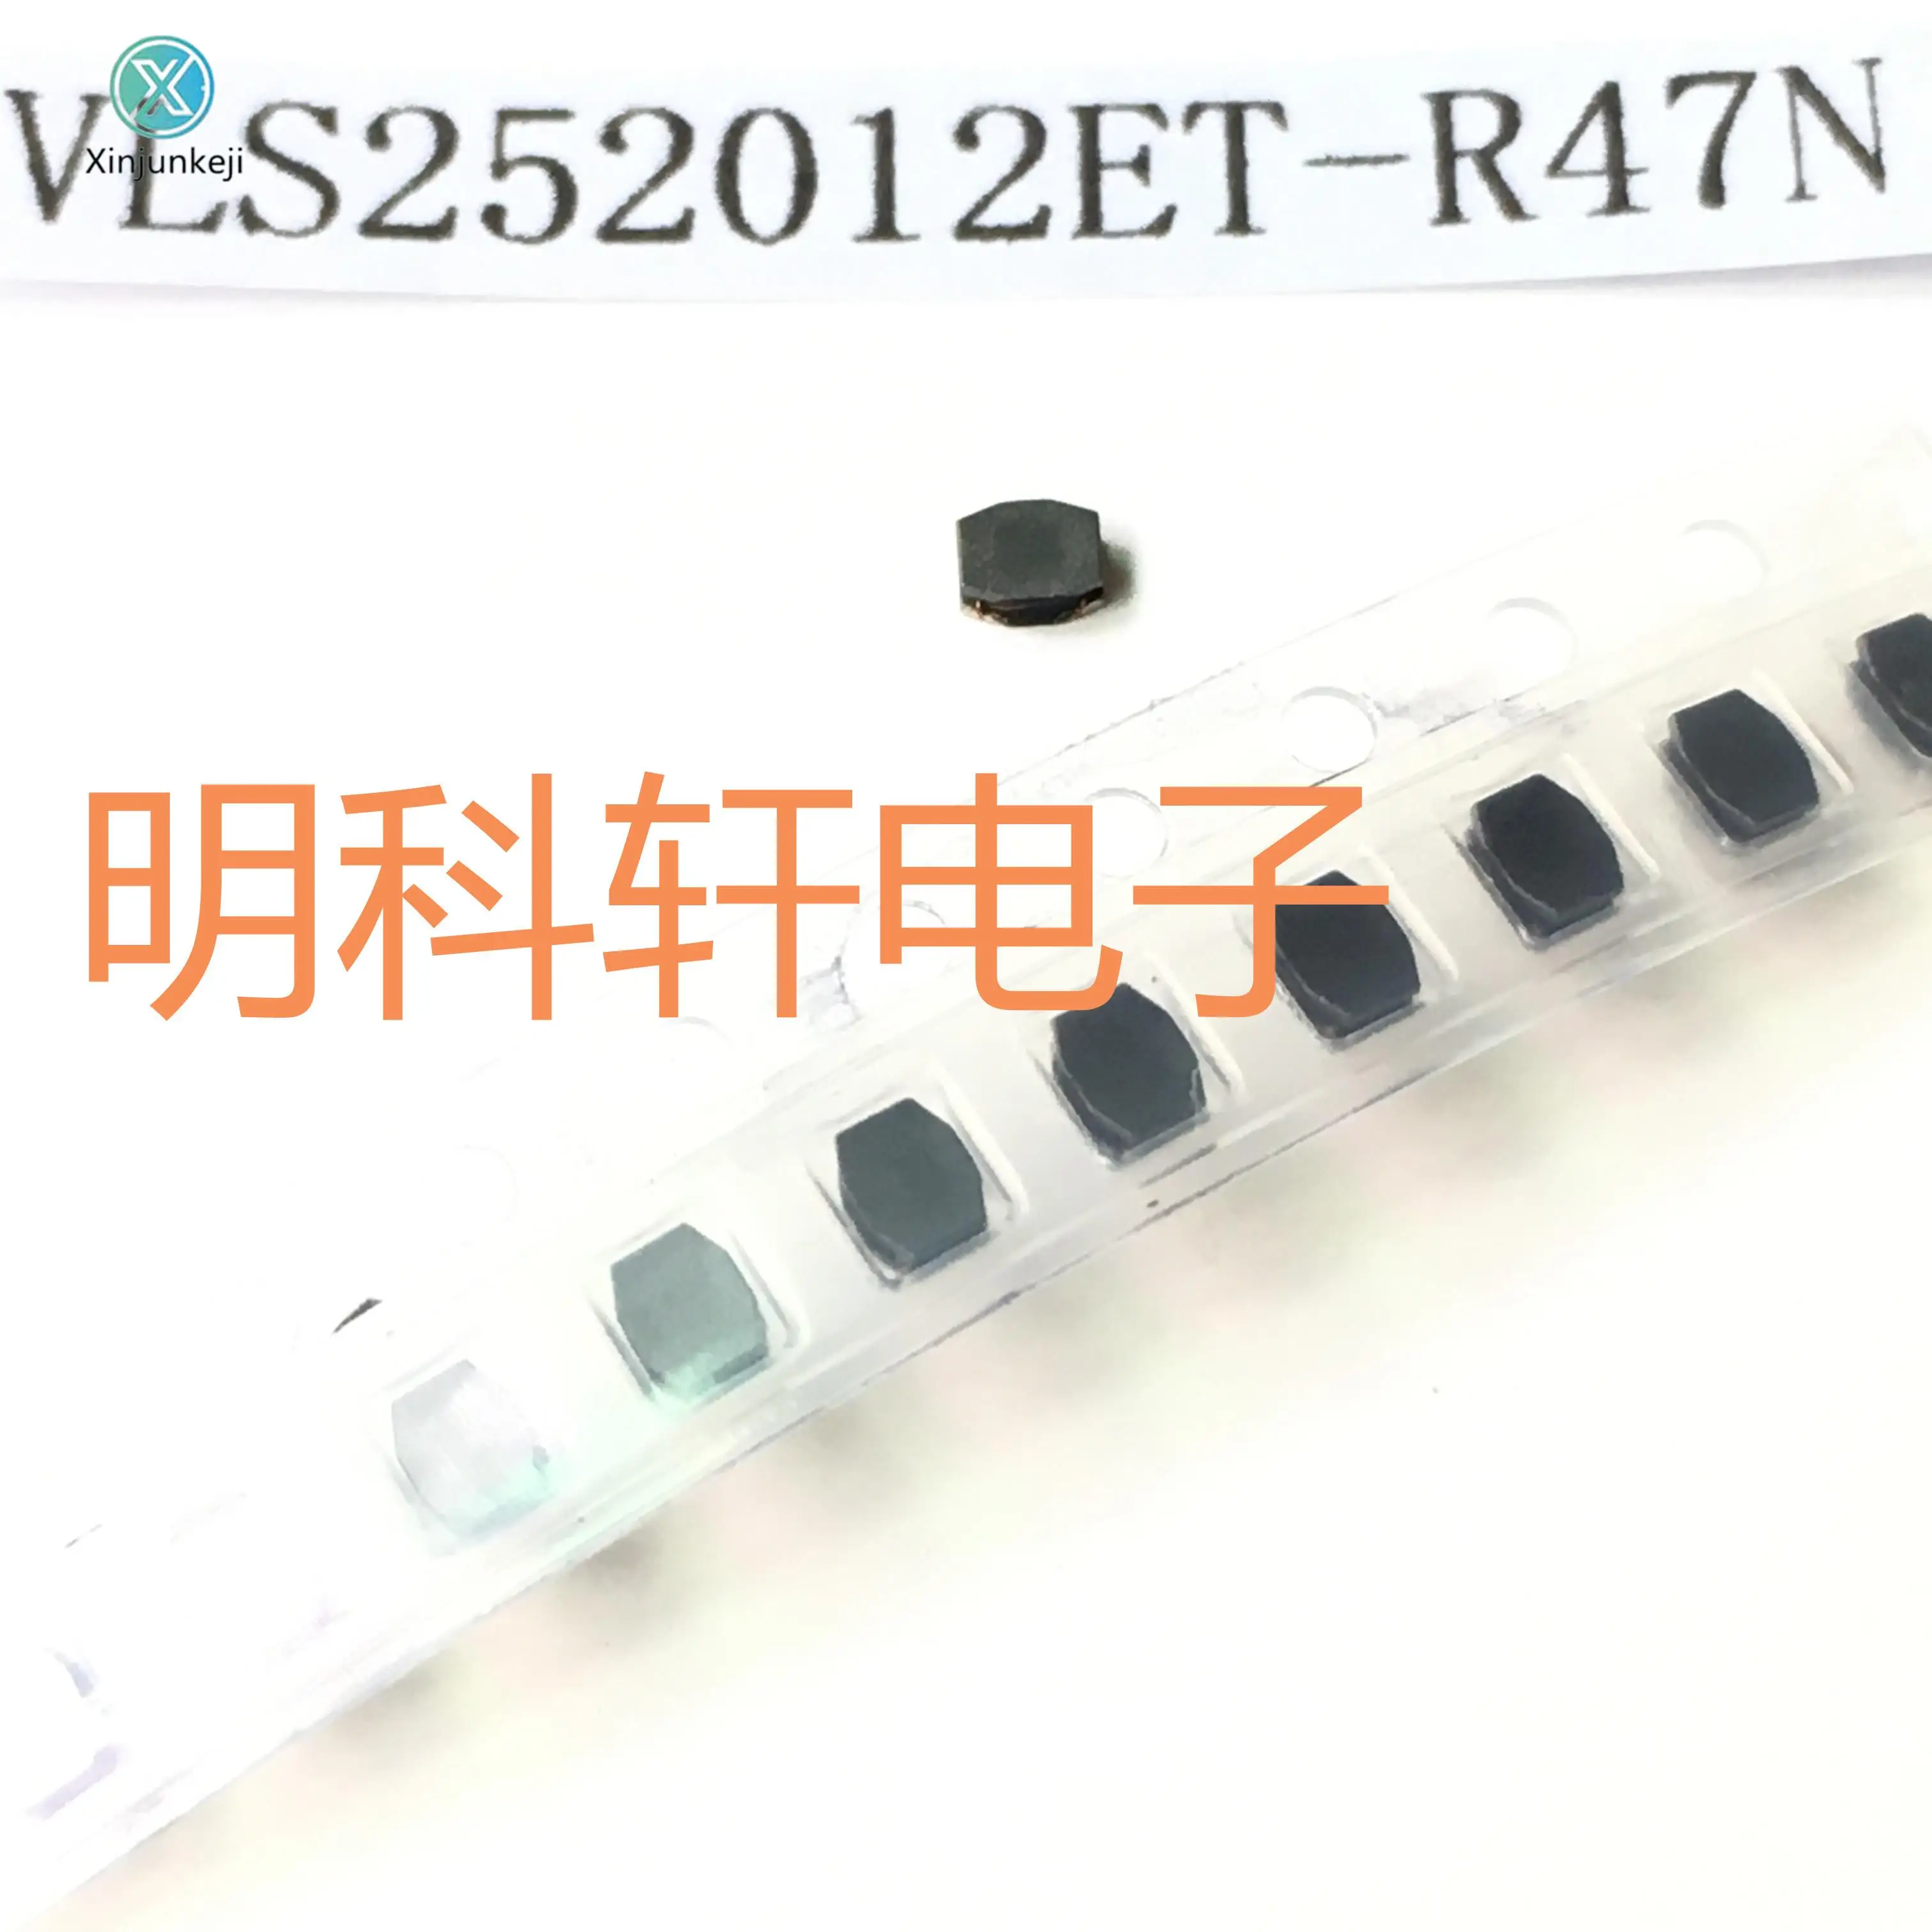 

30pcs orginal new VLS252012ET-R47N SMD power inductor 0.47UH 2.5*2.0*1.2